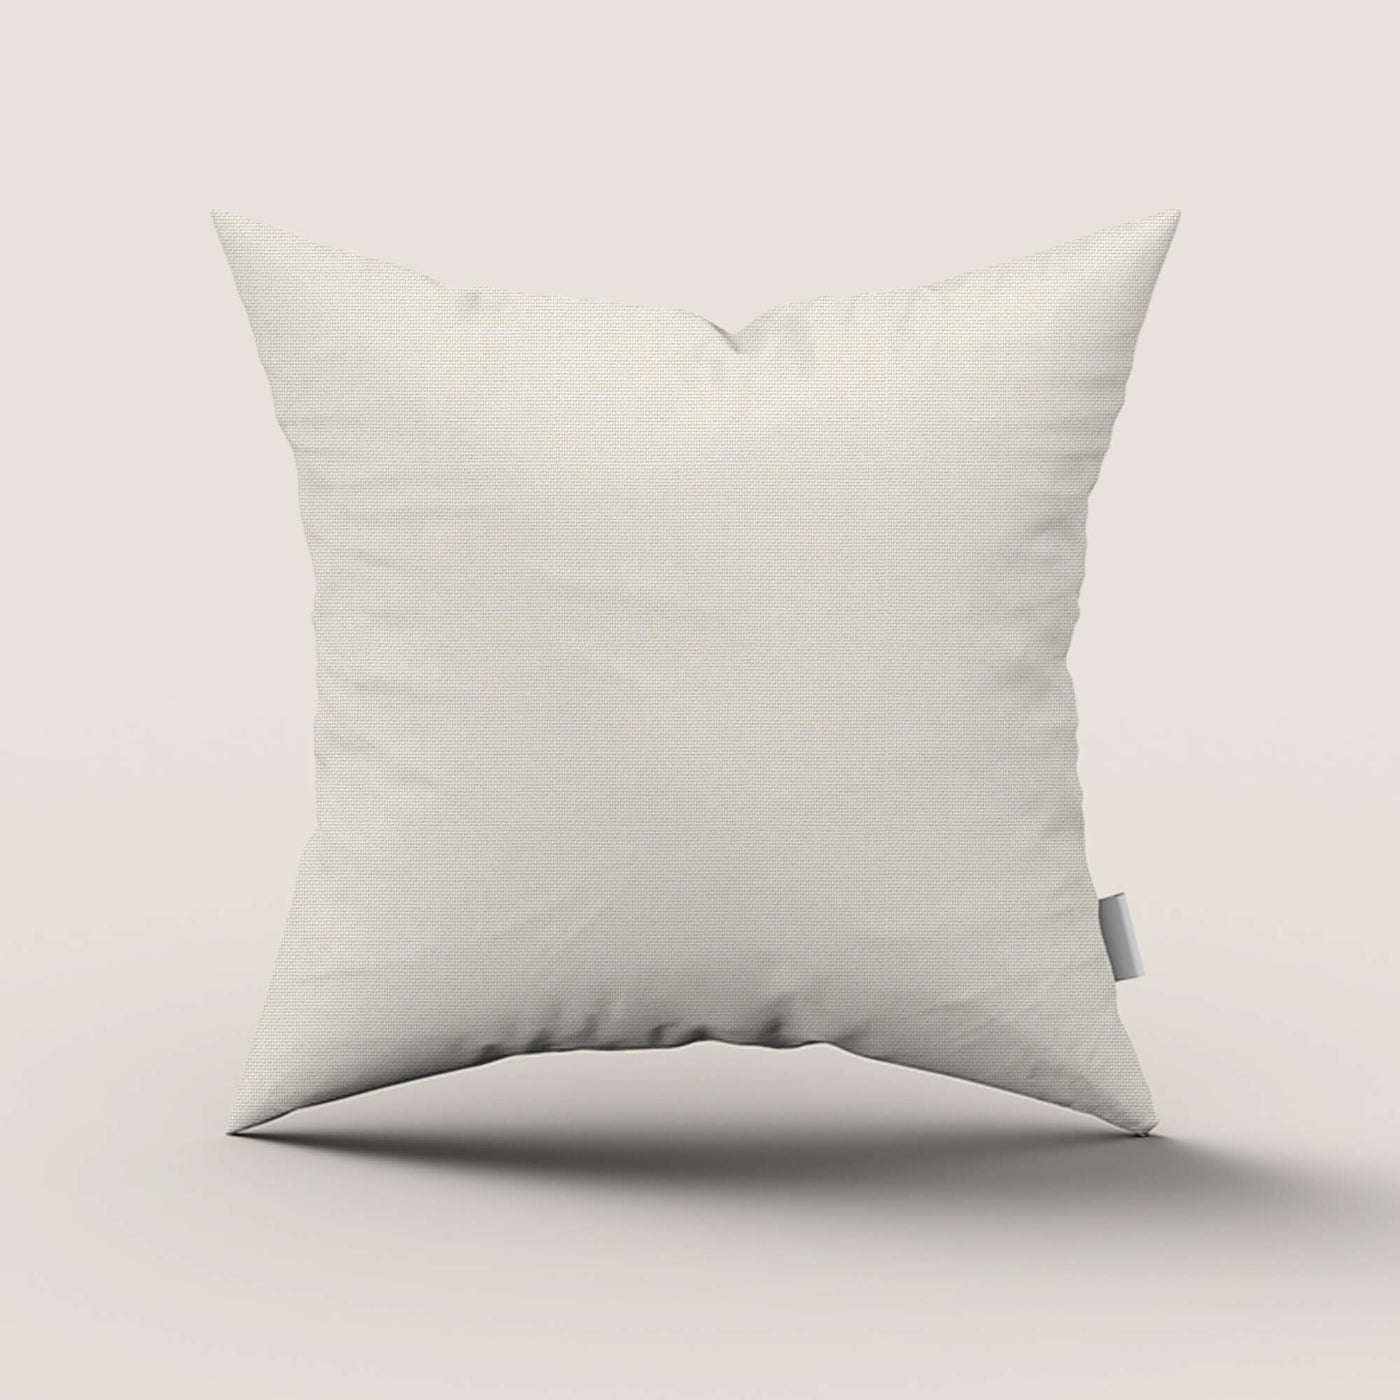 PENGI Waterproof Outdoor Throw Pillows 1 Pcs - Sailcloth